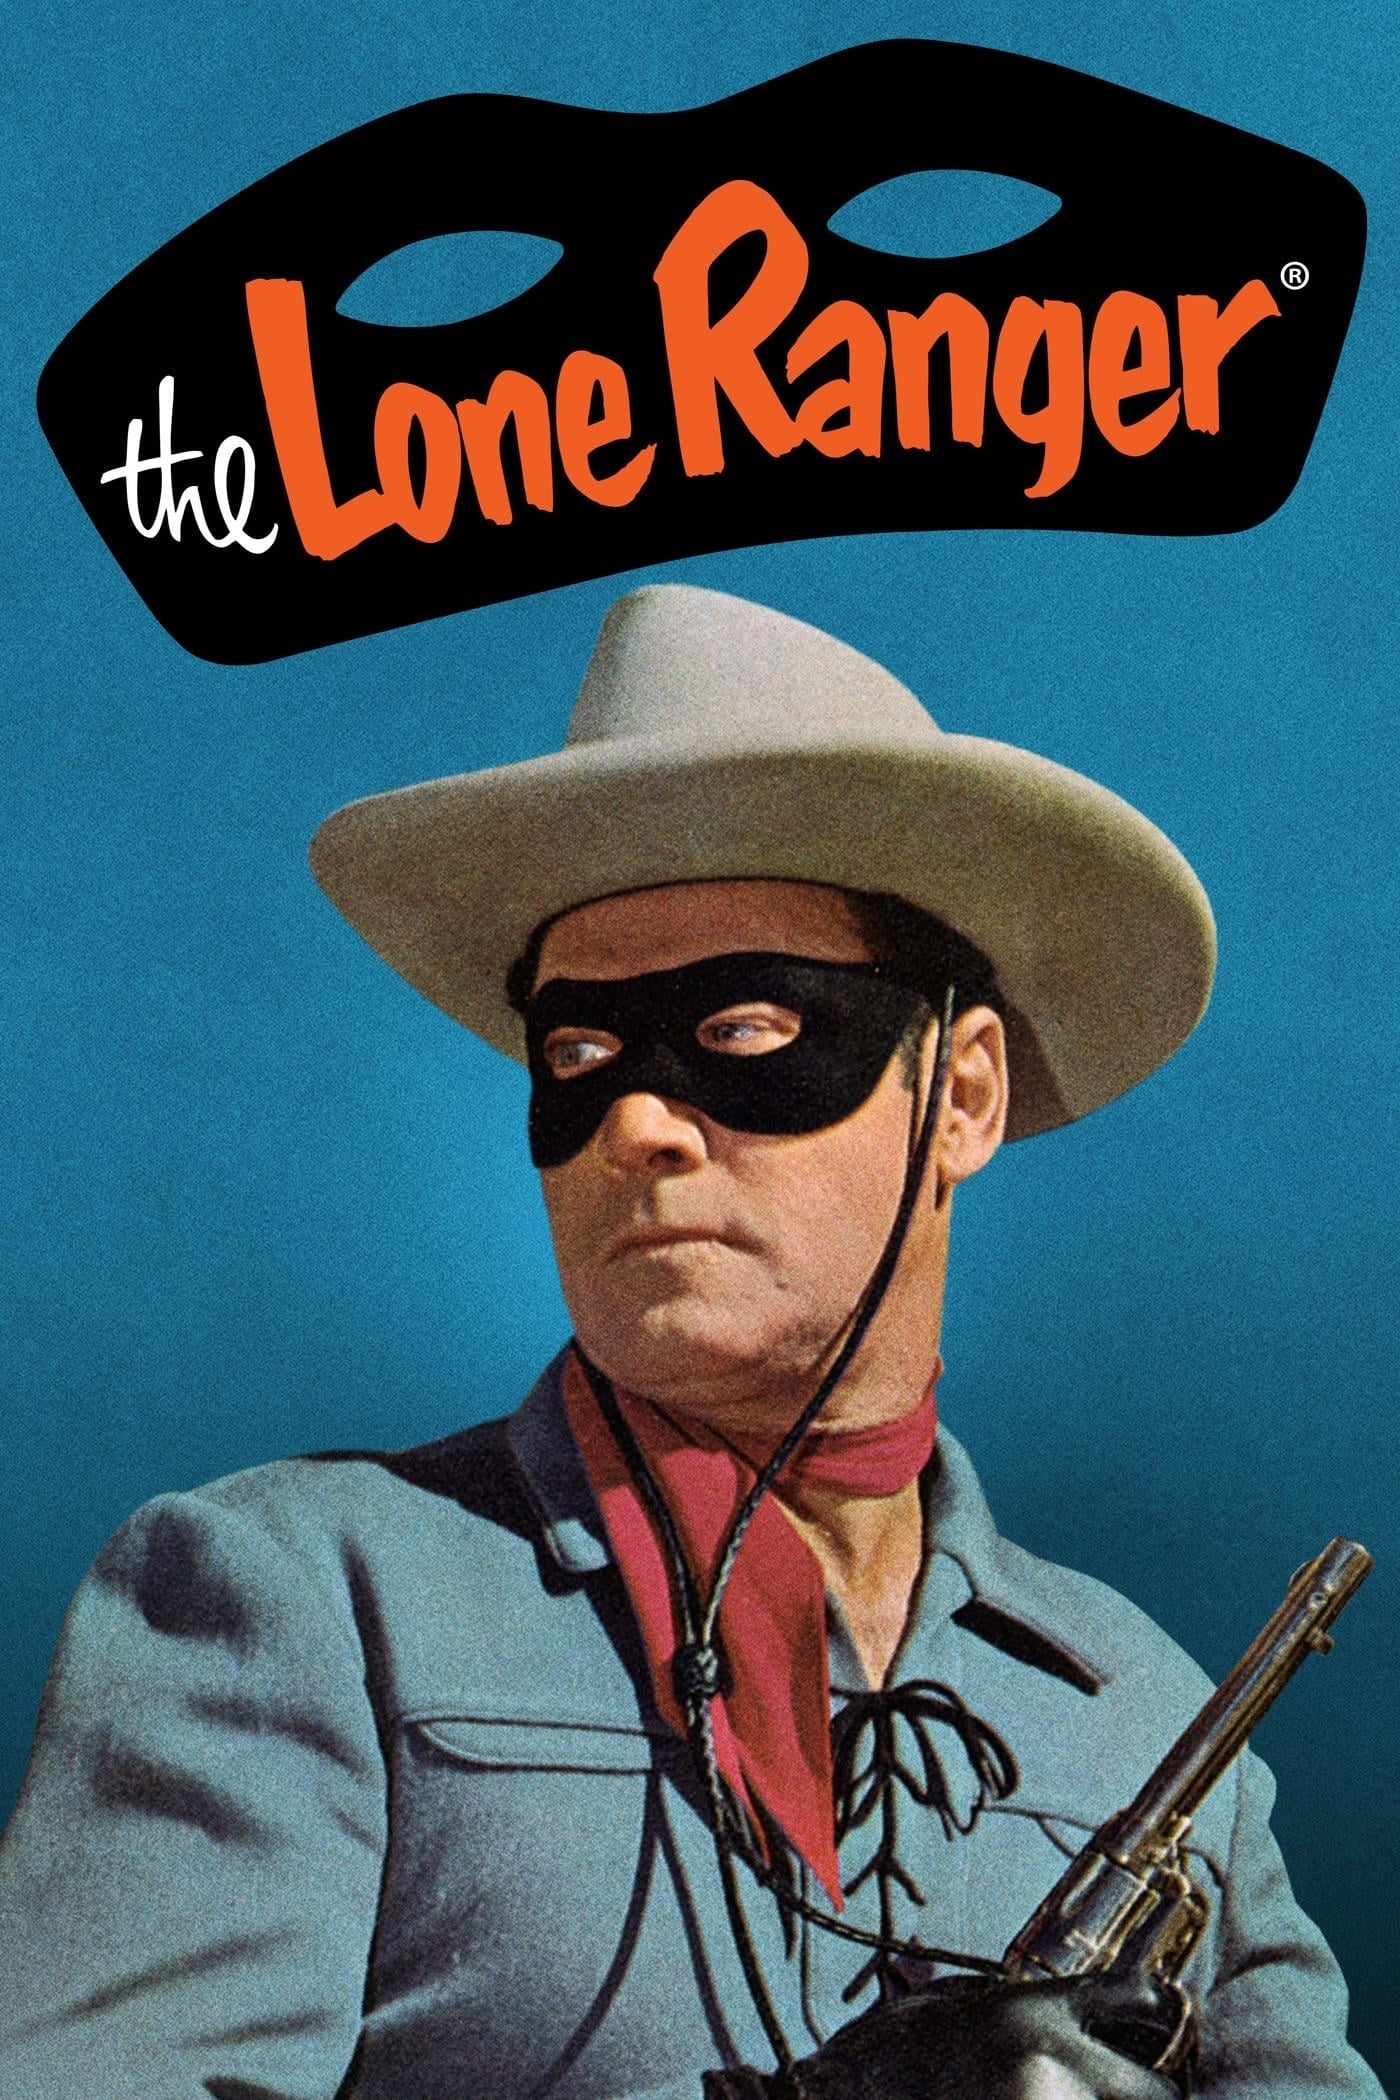 the lone ranger tv